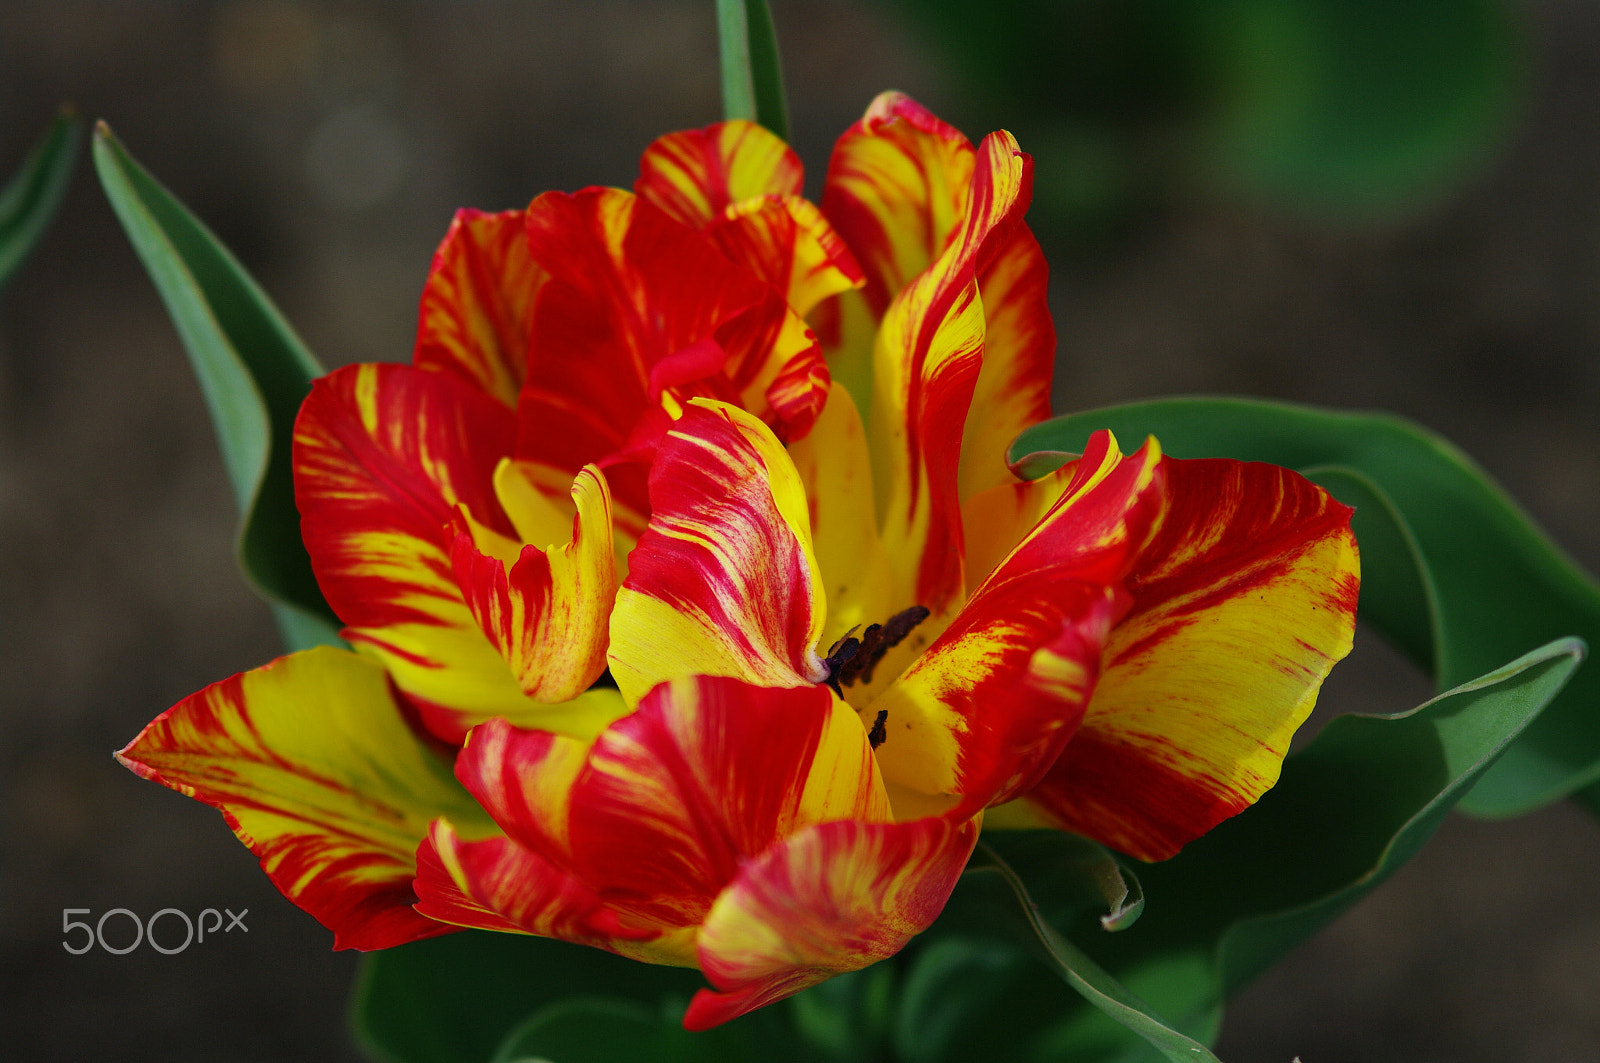 Pentax K20D sample photo. Fire flower photography